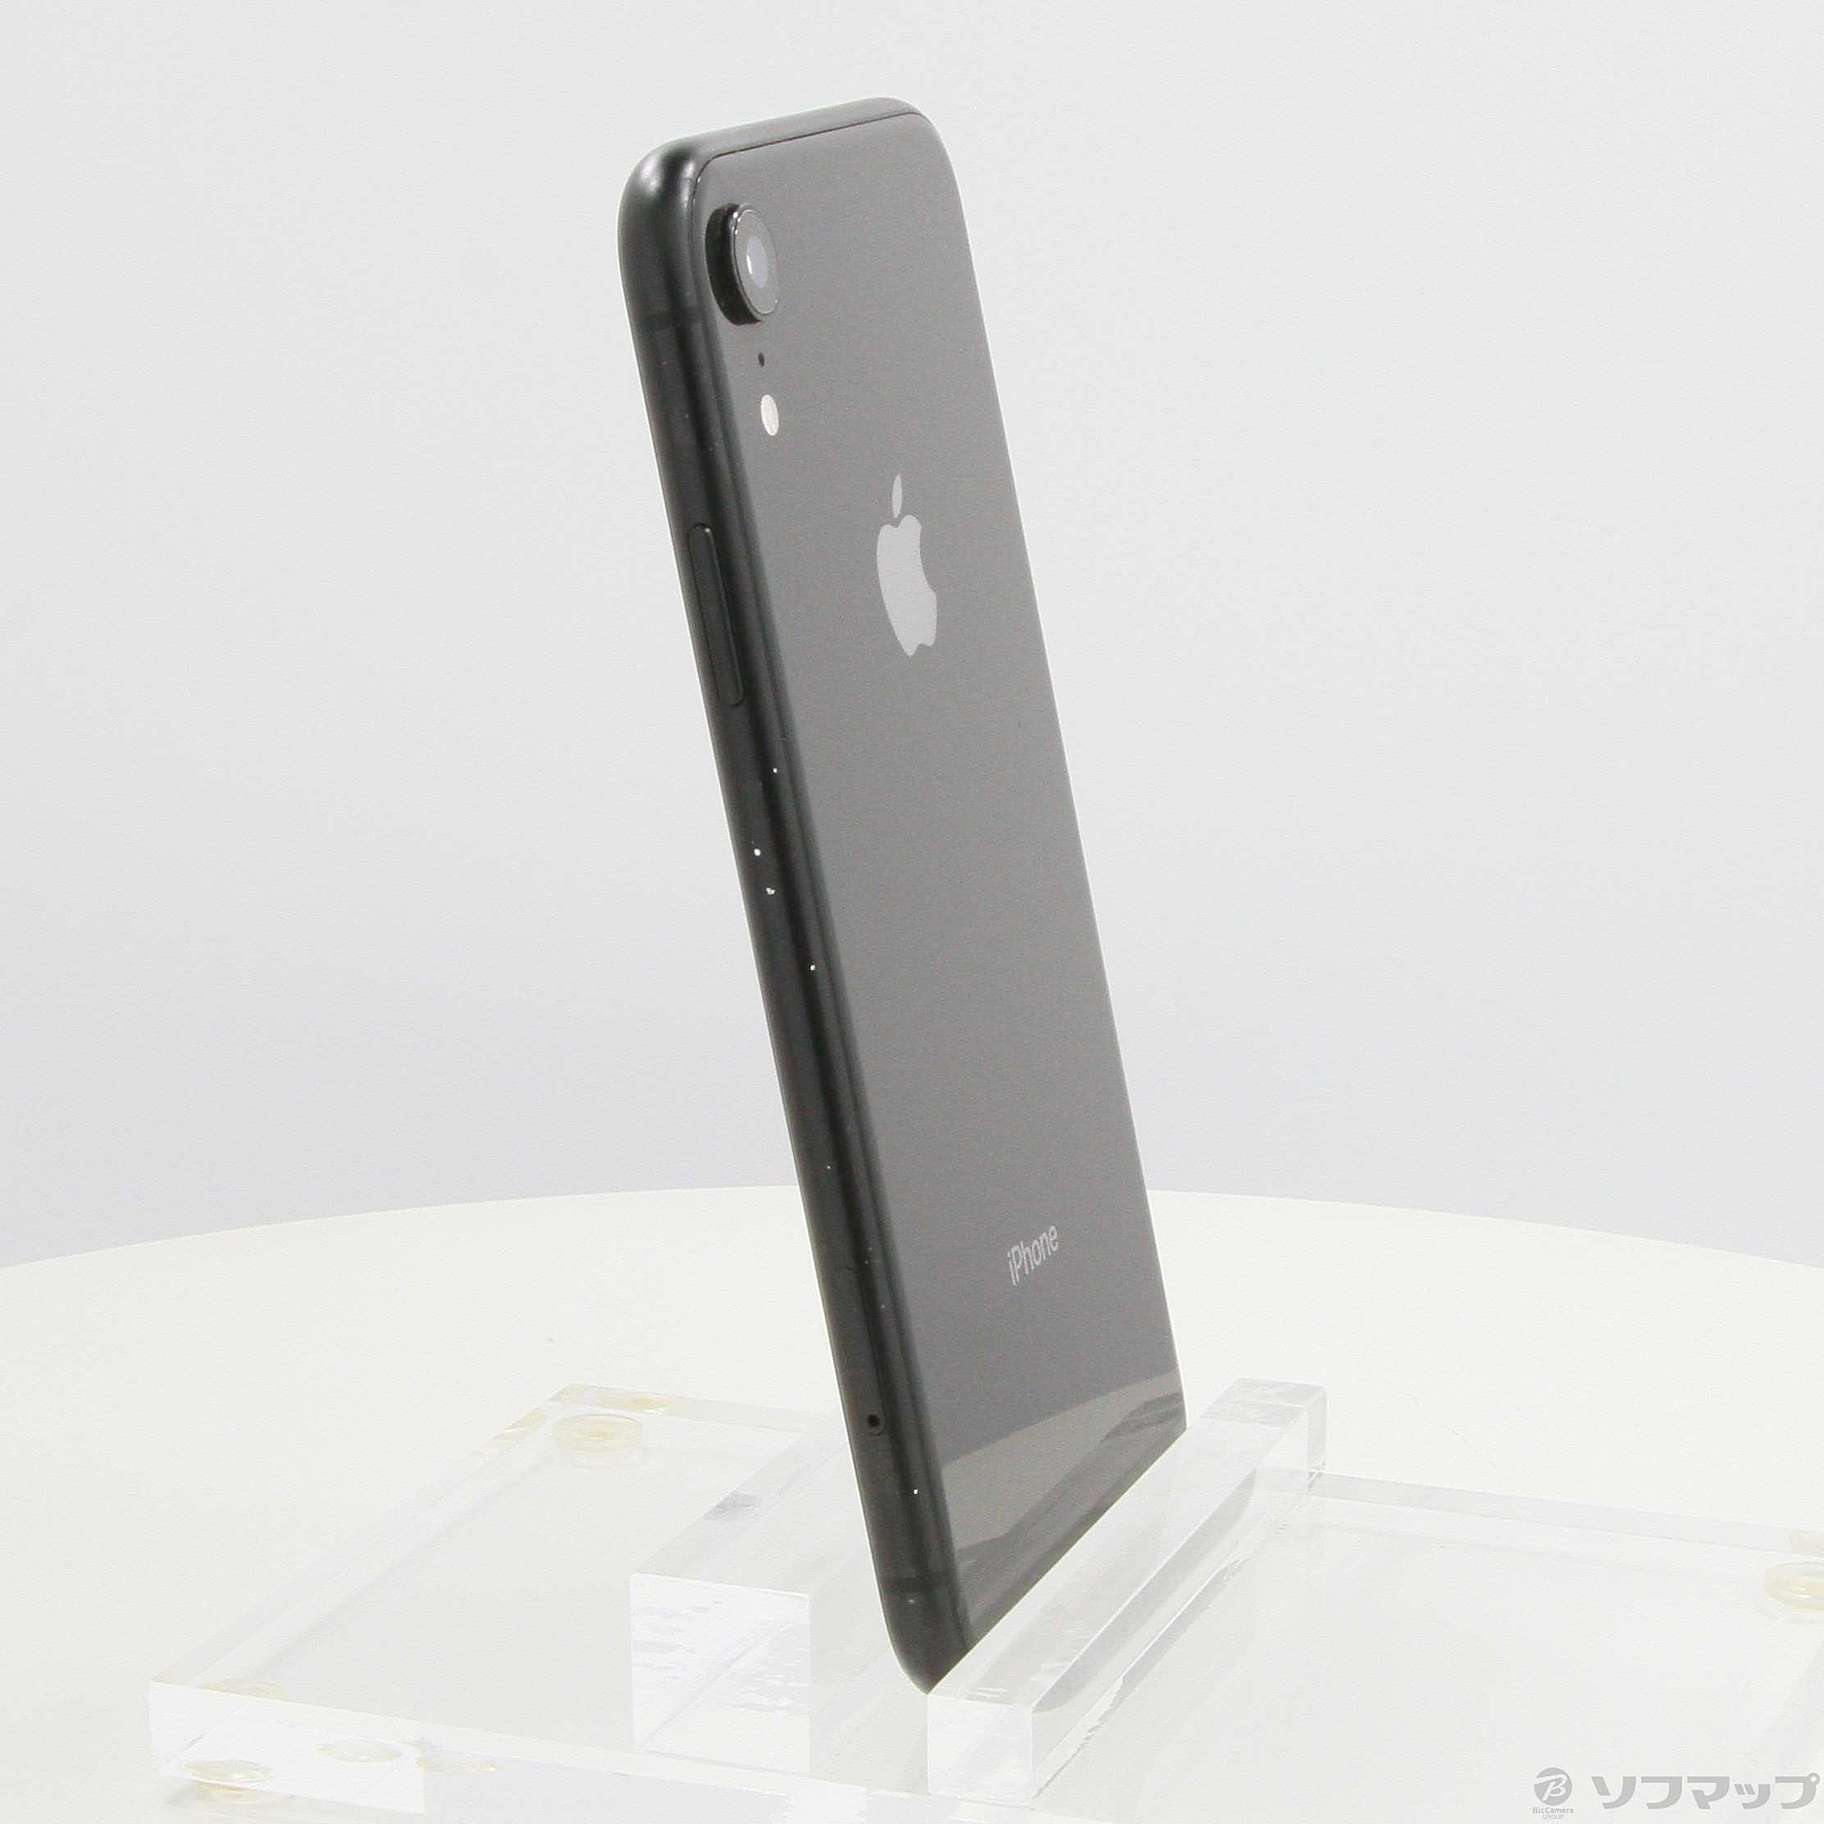 iPhoneXR 128GB MT0G2J/A Black バッテリー81% 日本販売済み